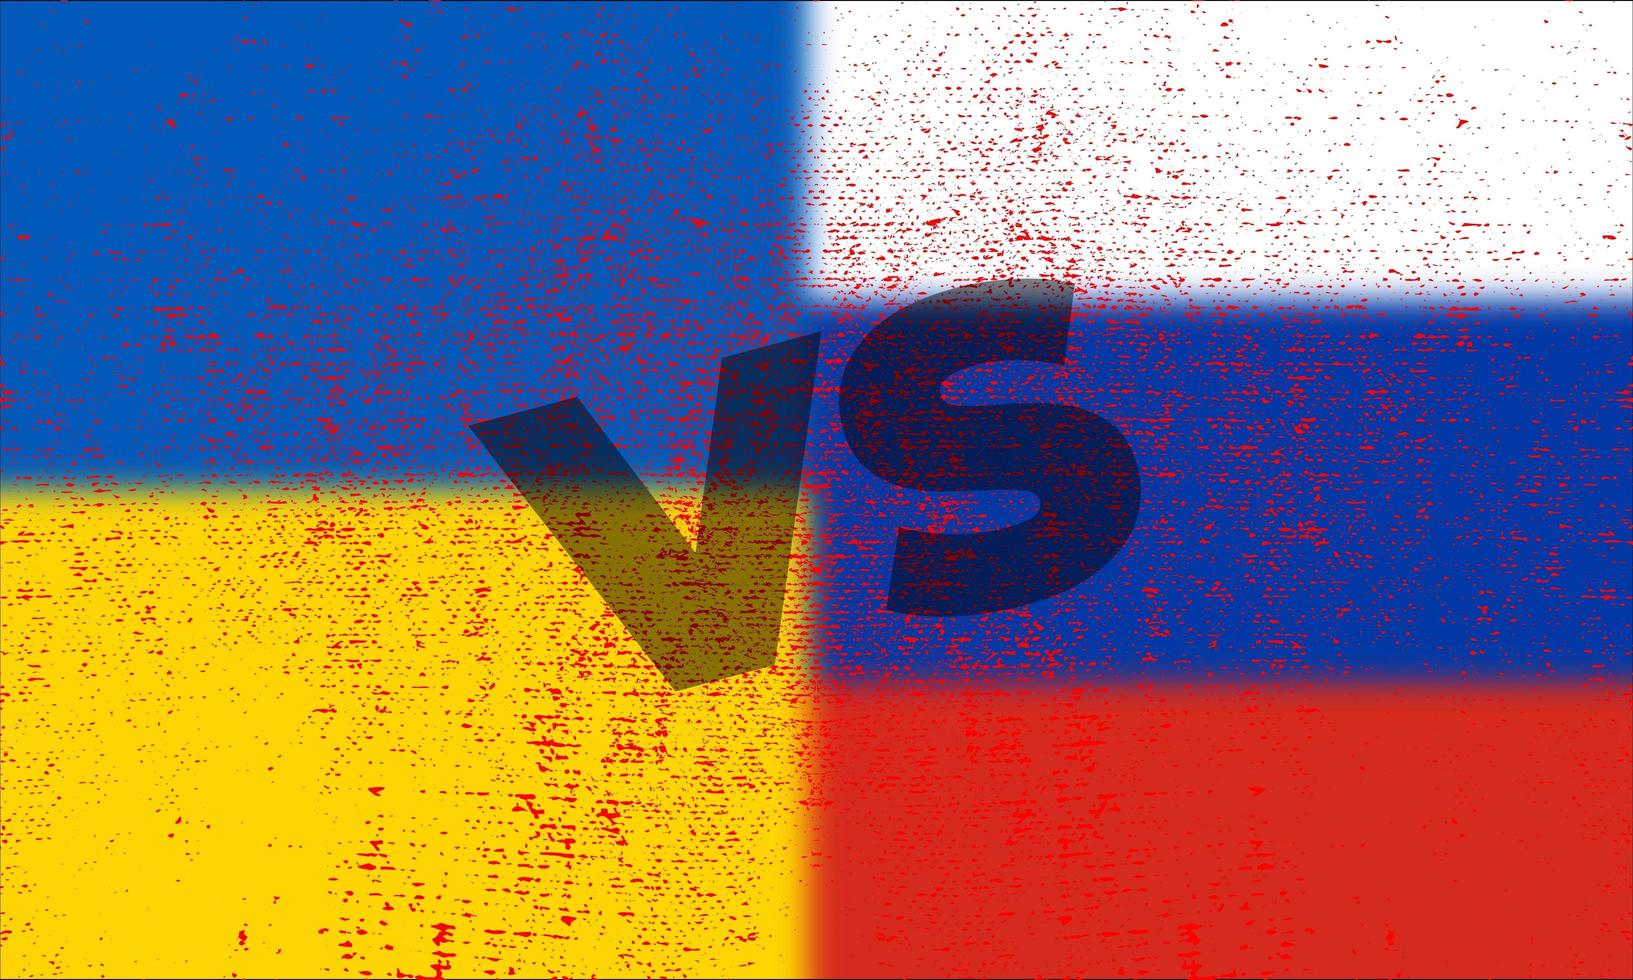 russland vs ukraine mit grunge landesflagge vektorillustration. kriegskrise und politisches konfliktkonzept foto